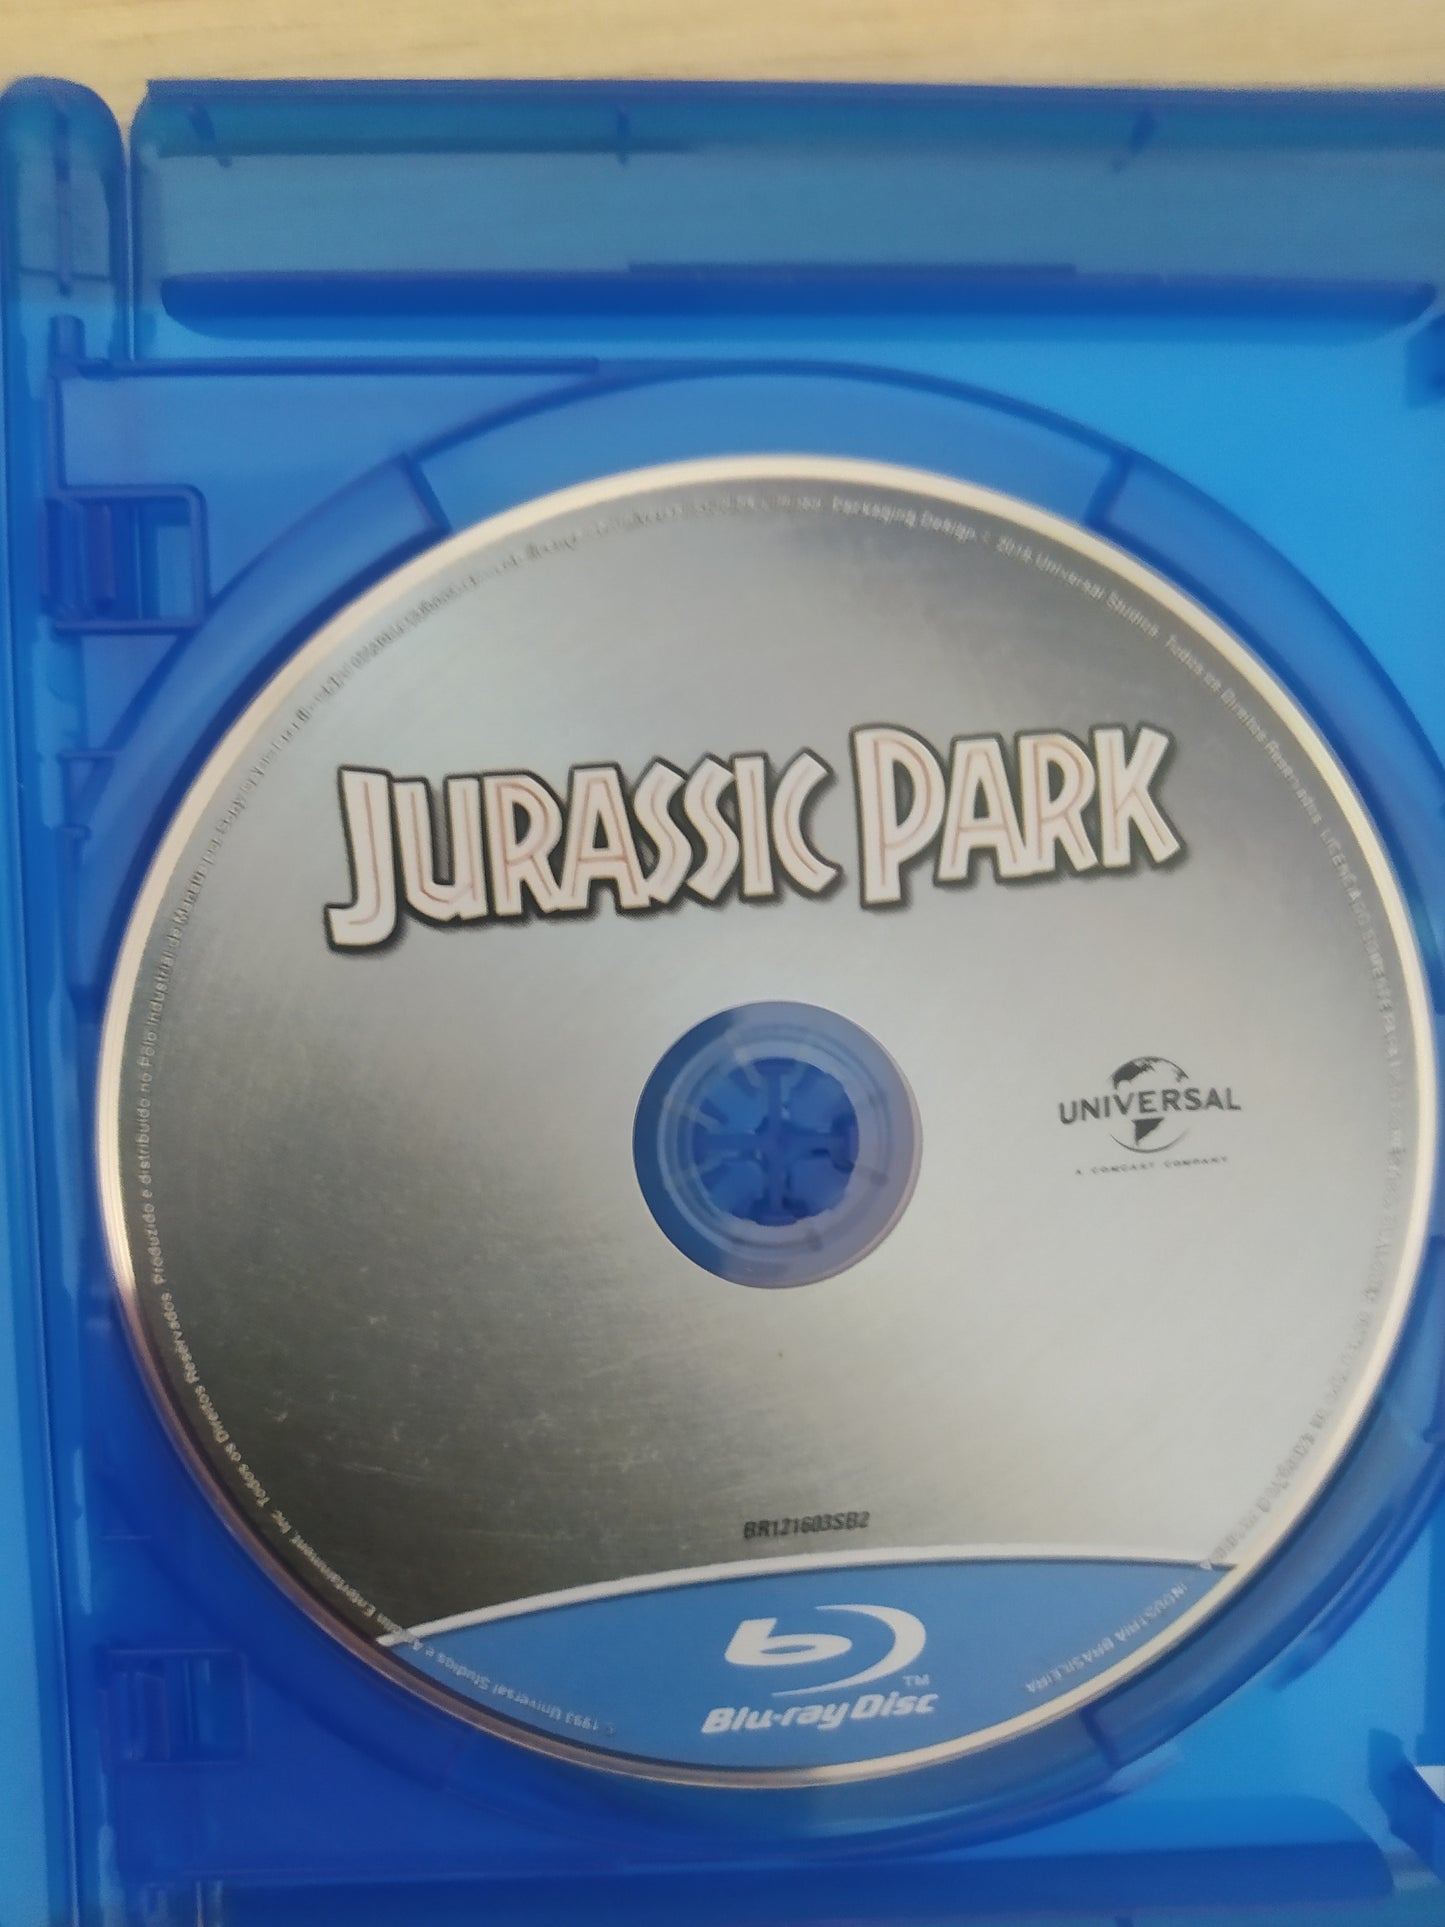 Blu Ray Box 4 Blu Rays Coleção Jurassic Park